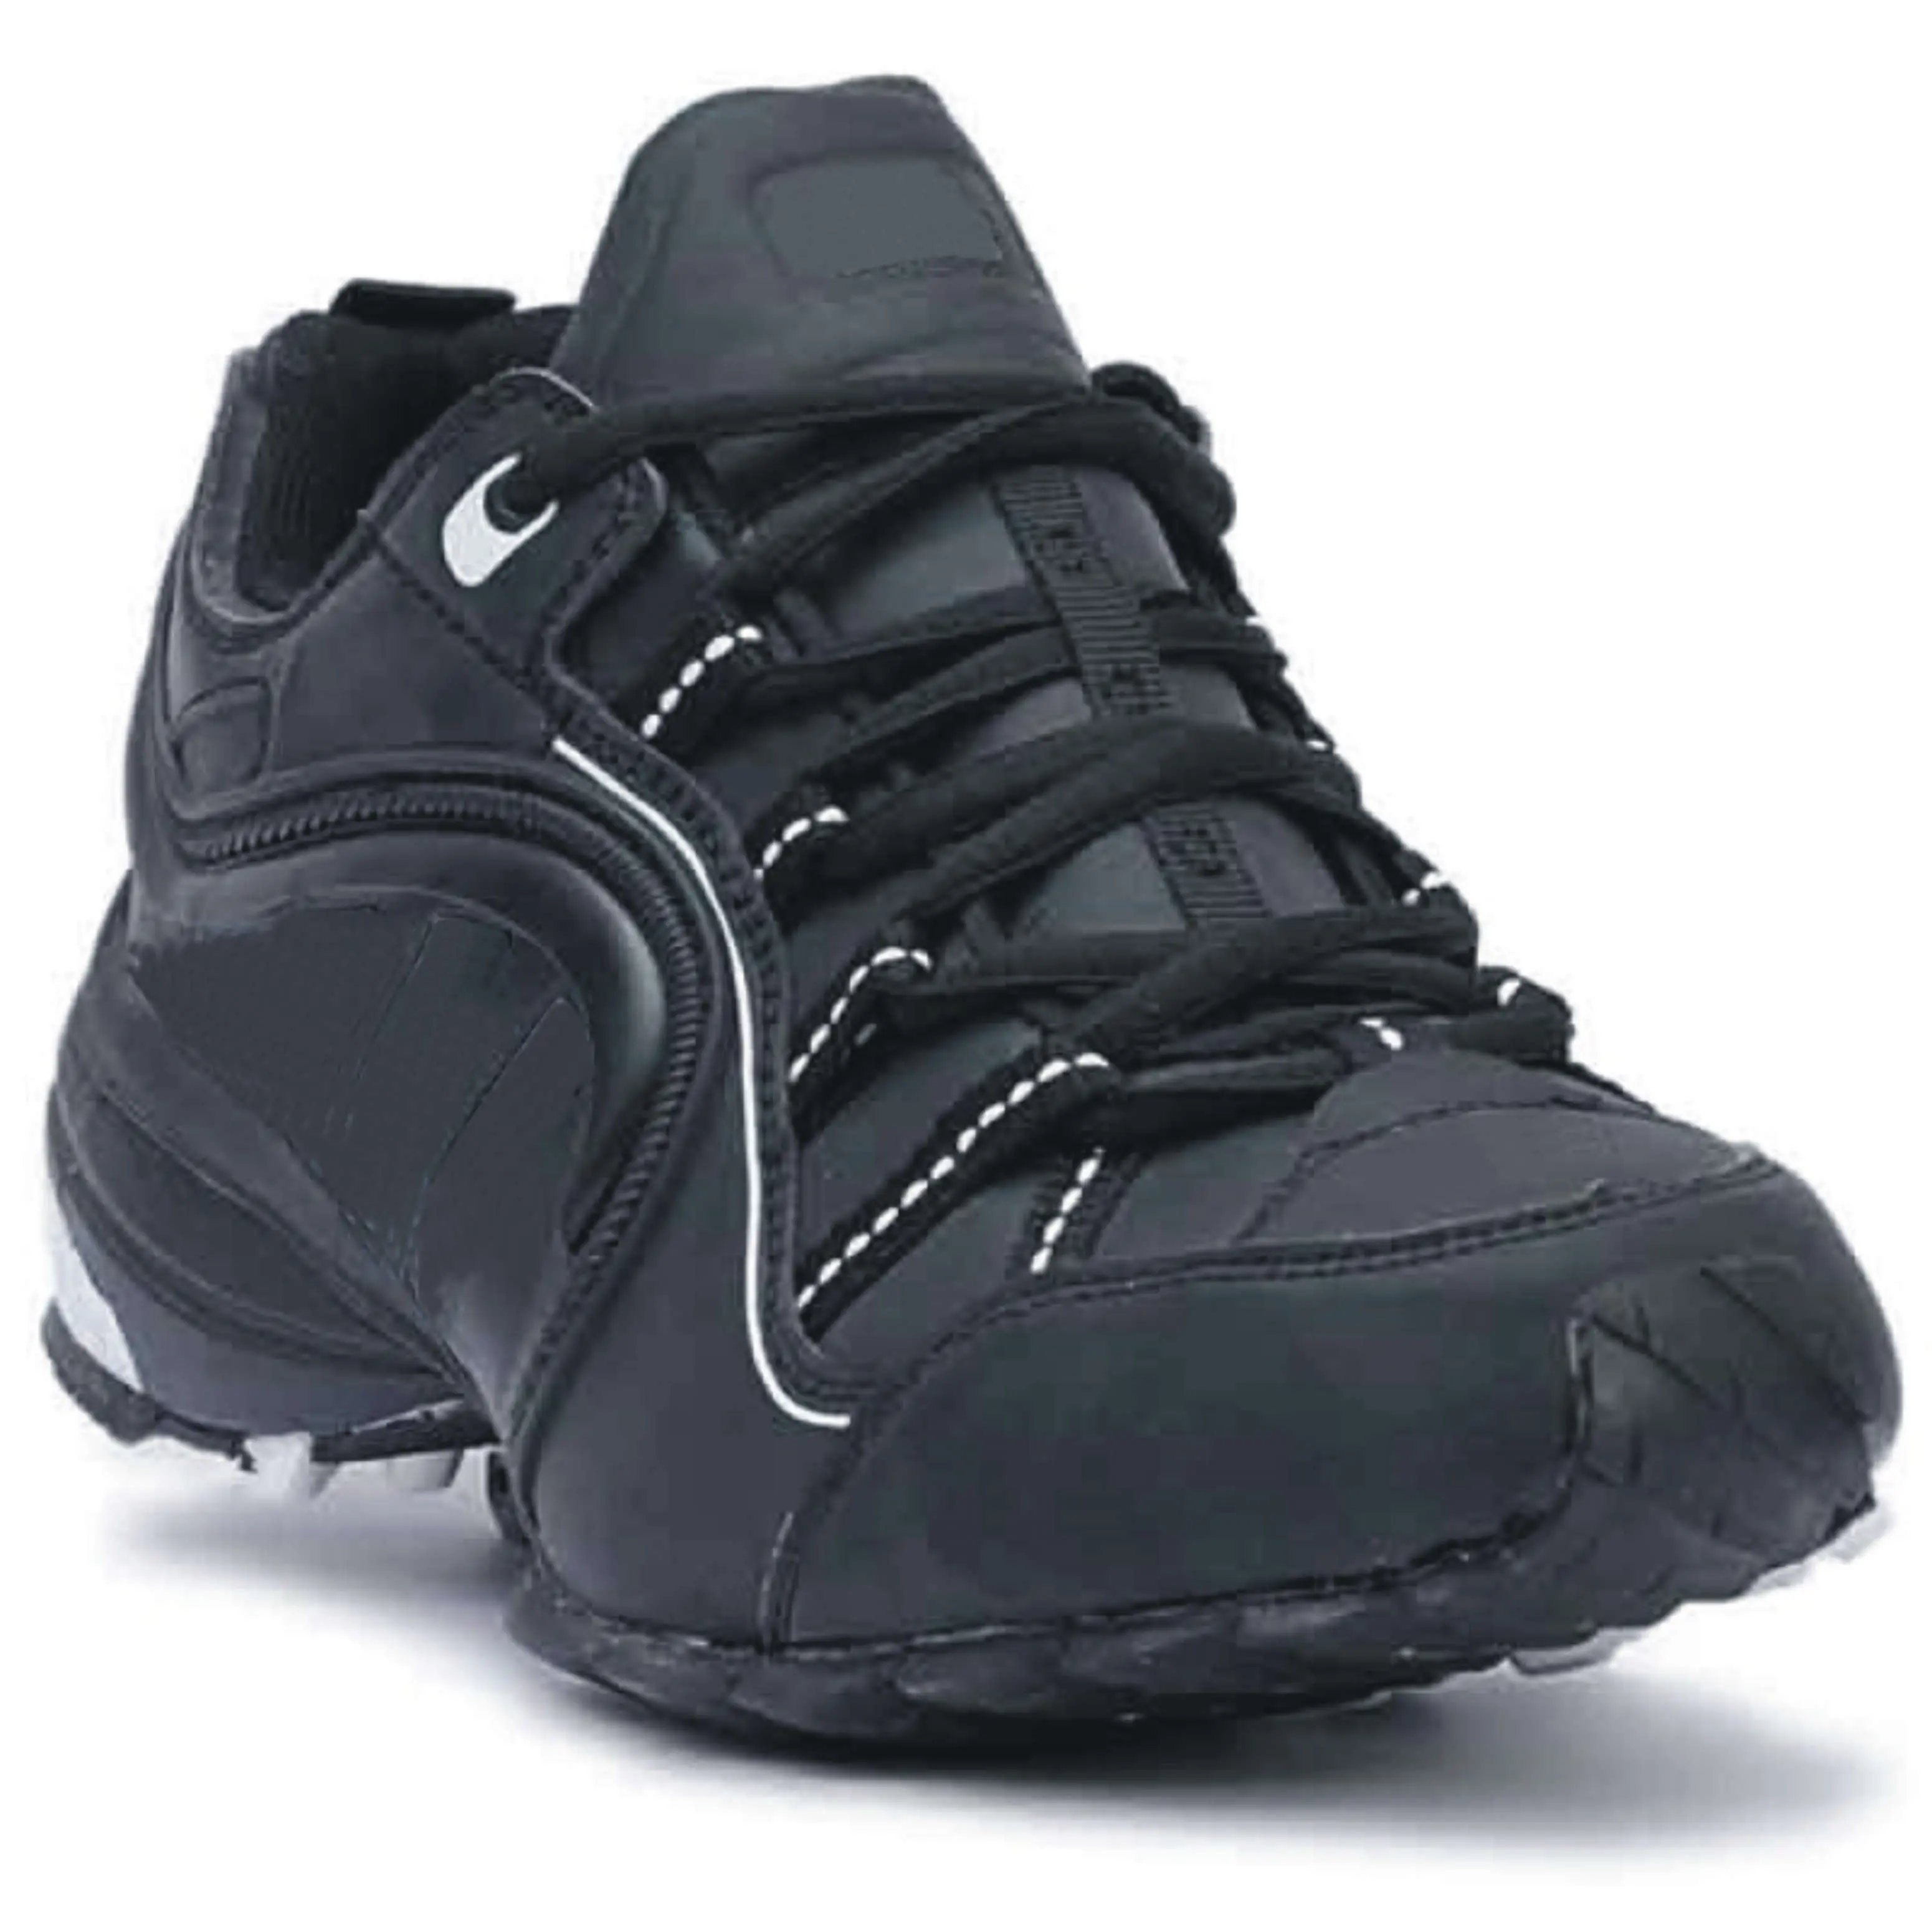 Toptan özel Logo erkekler konfor rahat spor ayakkabı Mesh nefes ucuz yürüyüş Jogger Sneakers atletik koşu çim ayakkabı